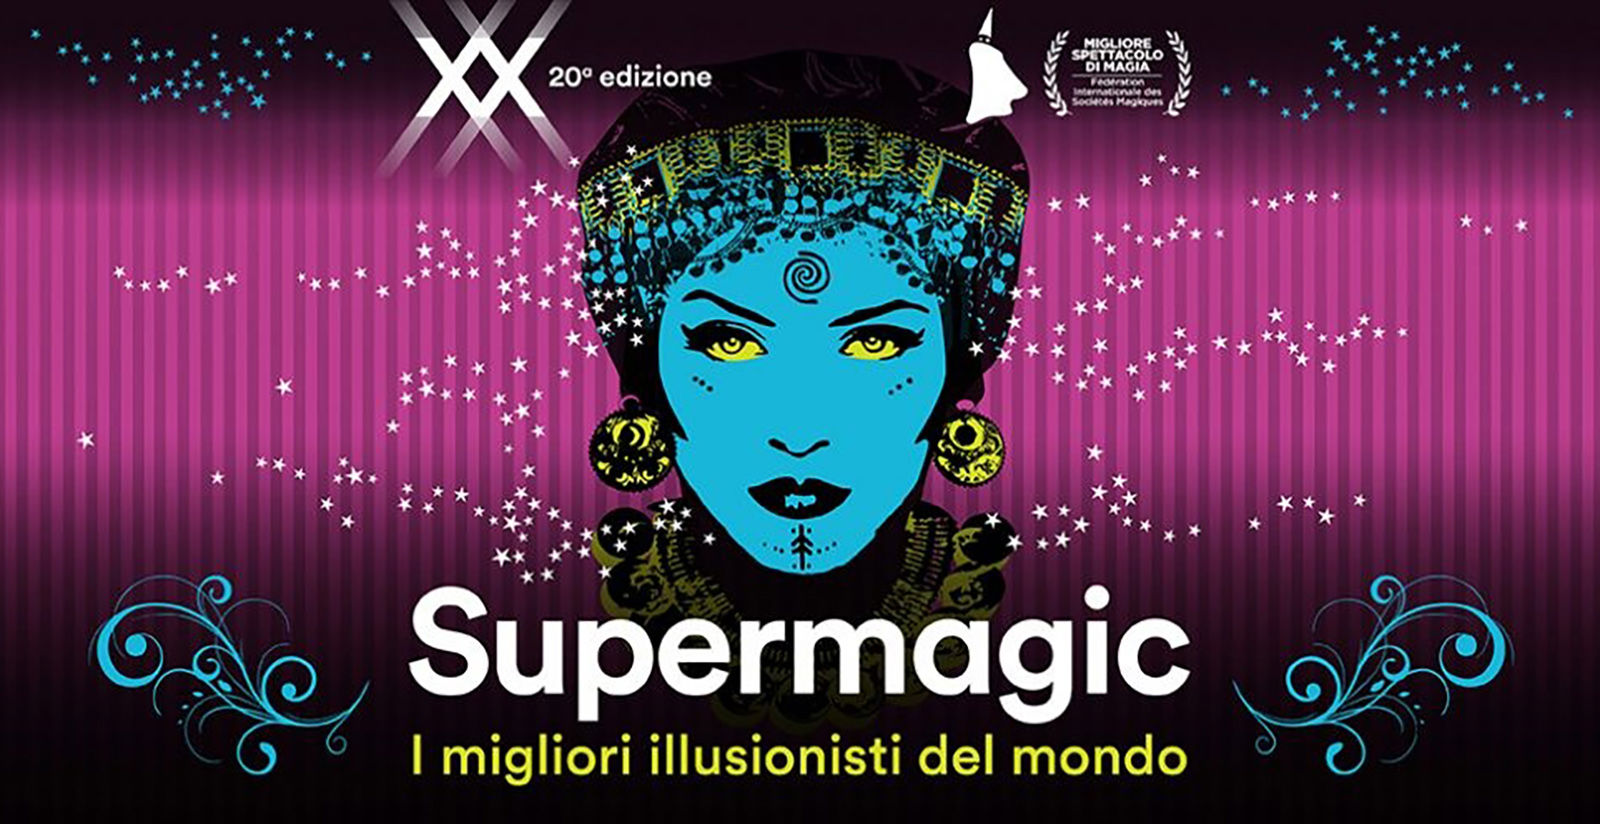 FH55 Hotels - La magia prende vita a Roma con Supermagic XX 2